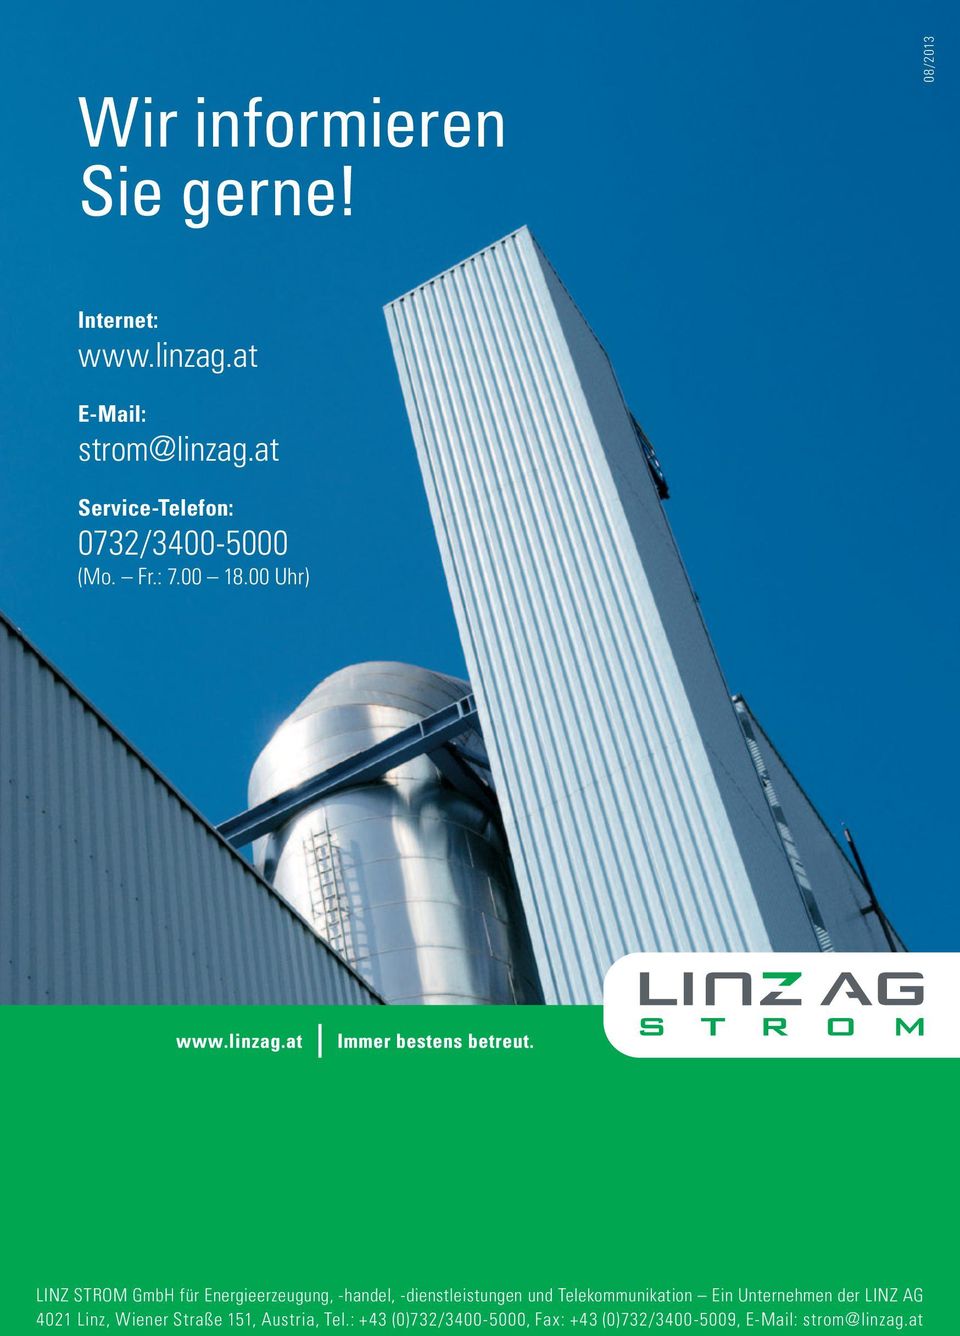 00 Uhr) Linz Strom GmbH für Energieerzeugung, -handel, -dienstleistungen und